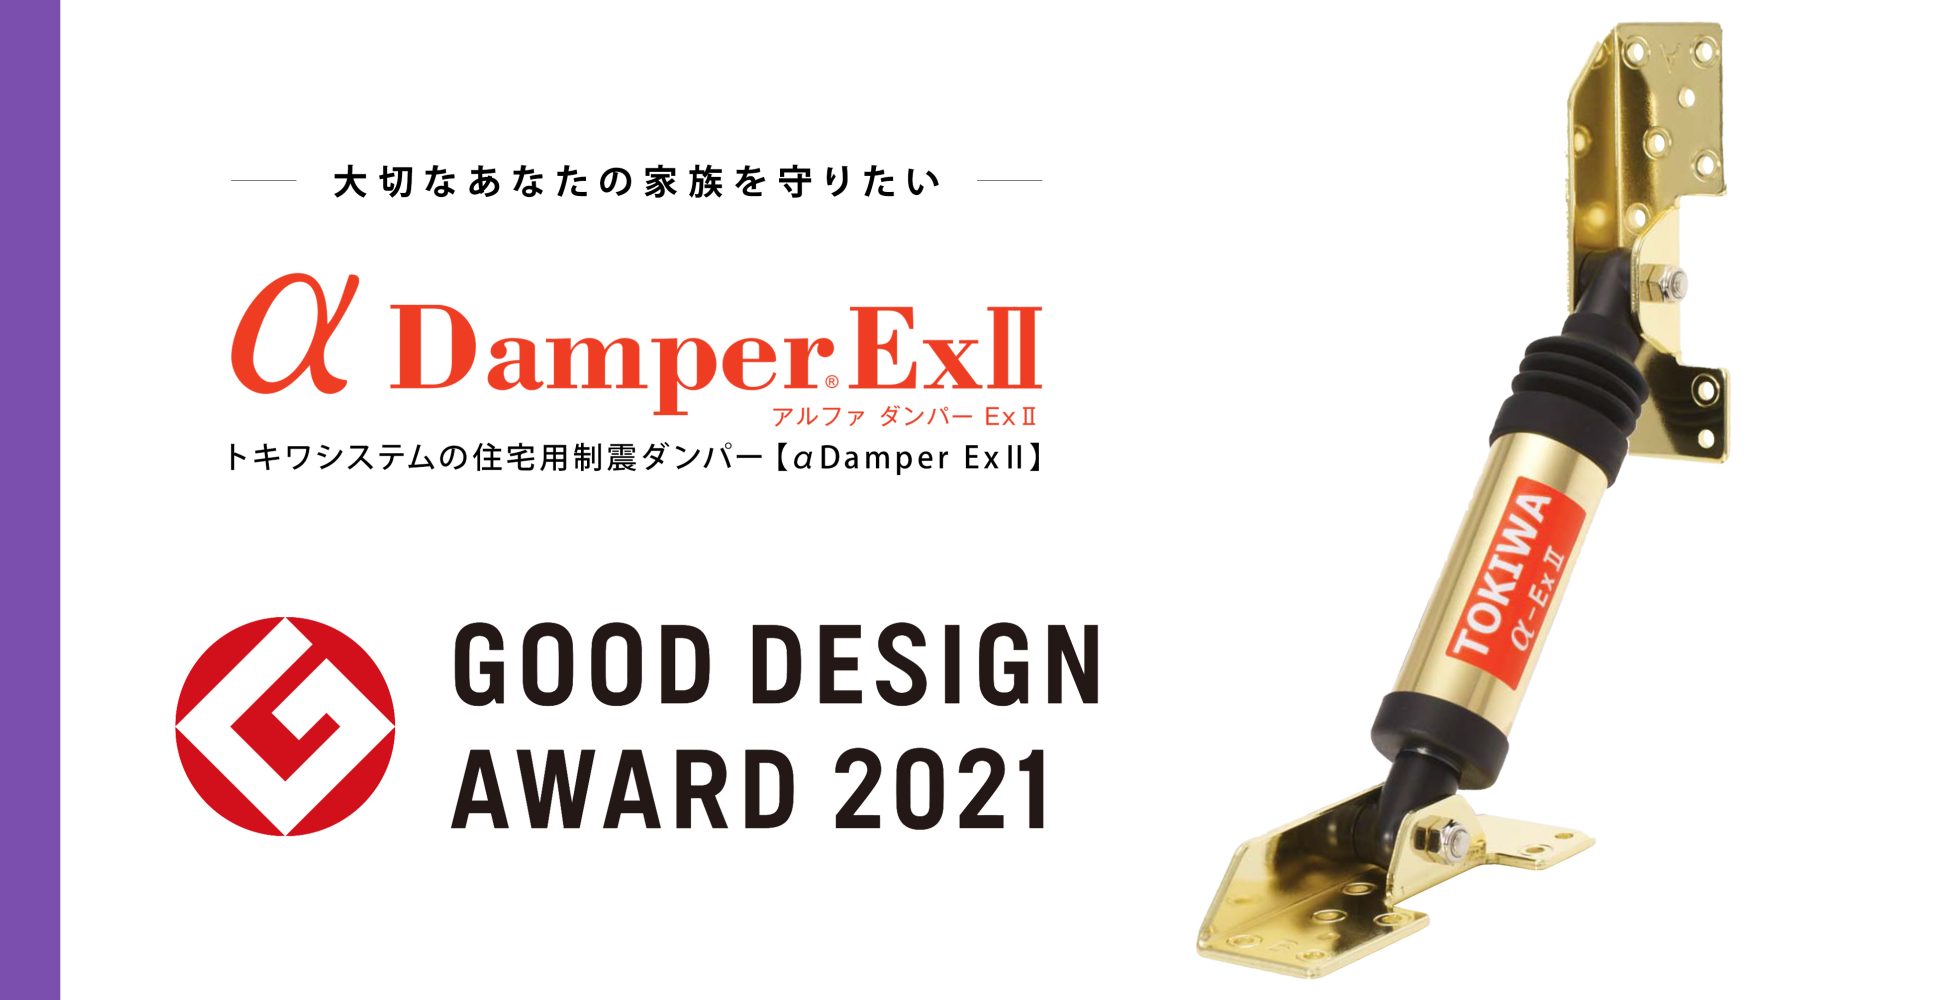 グッドデザイン賞を受賞した制震ダンパー,αダンパーExⅡの外観